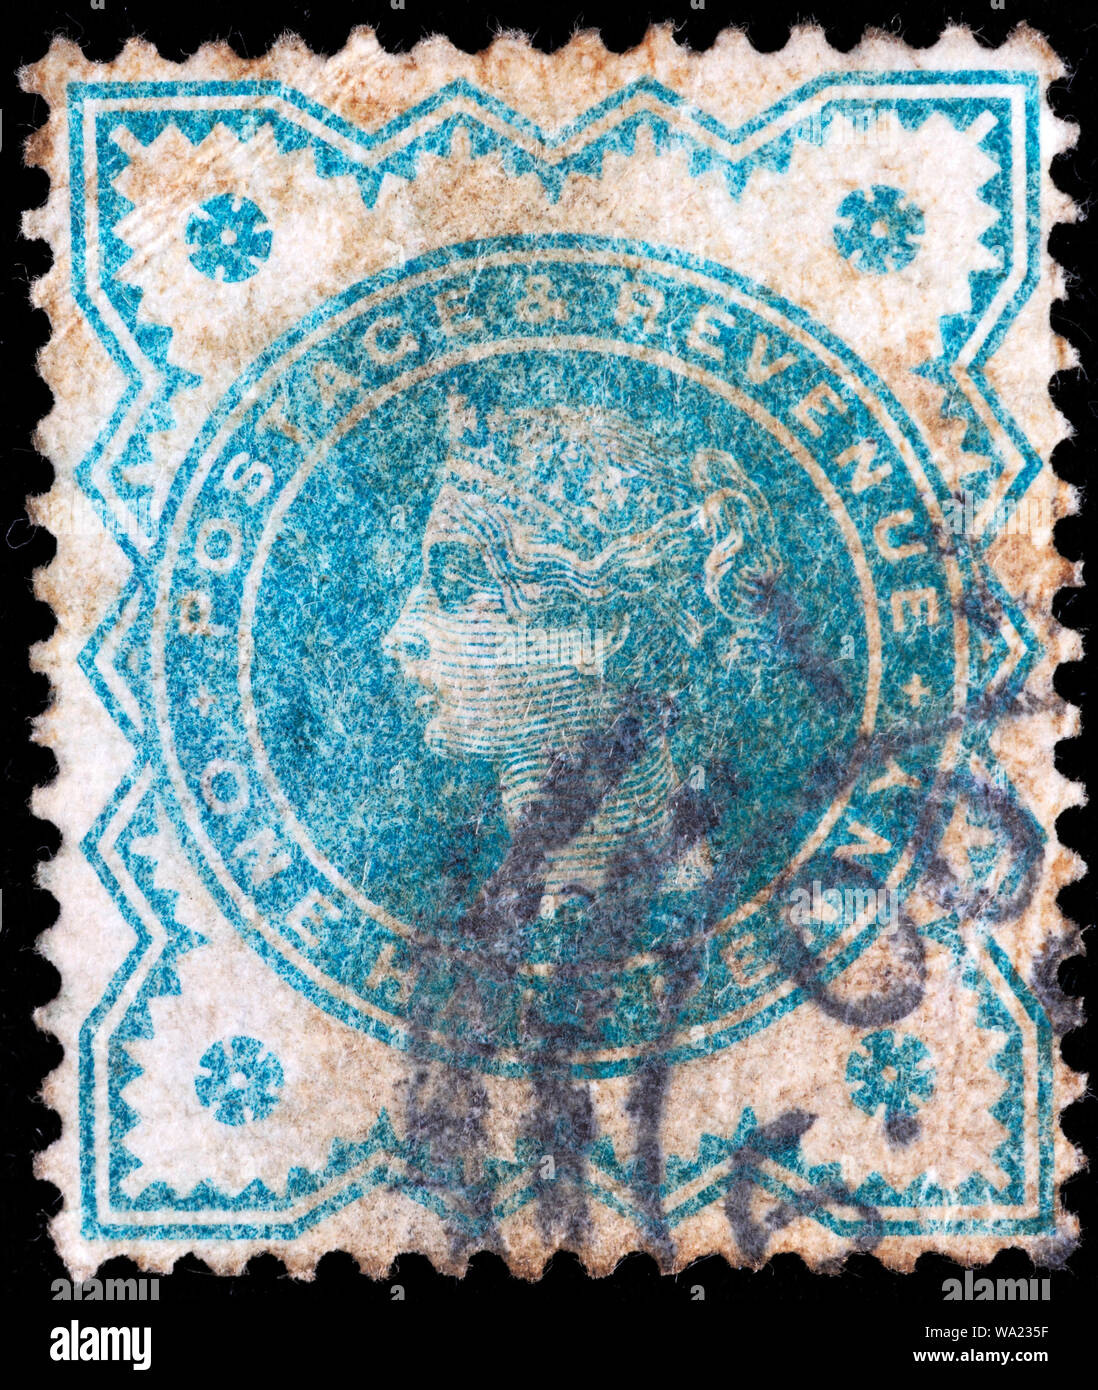 La reine Victoria (1819-1901), timbre-poste, UK, 1887 Banque D'Images